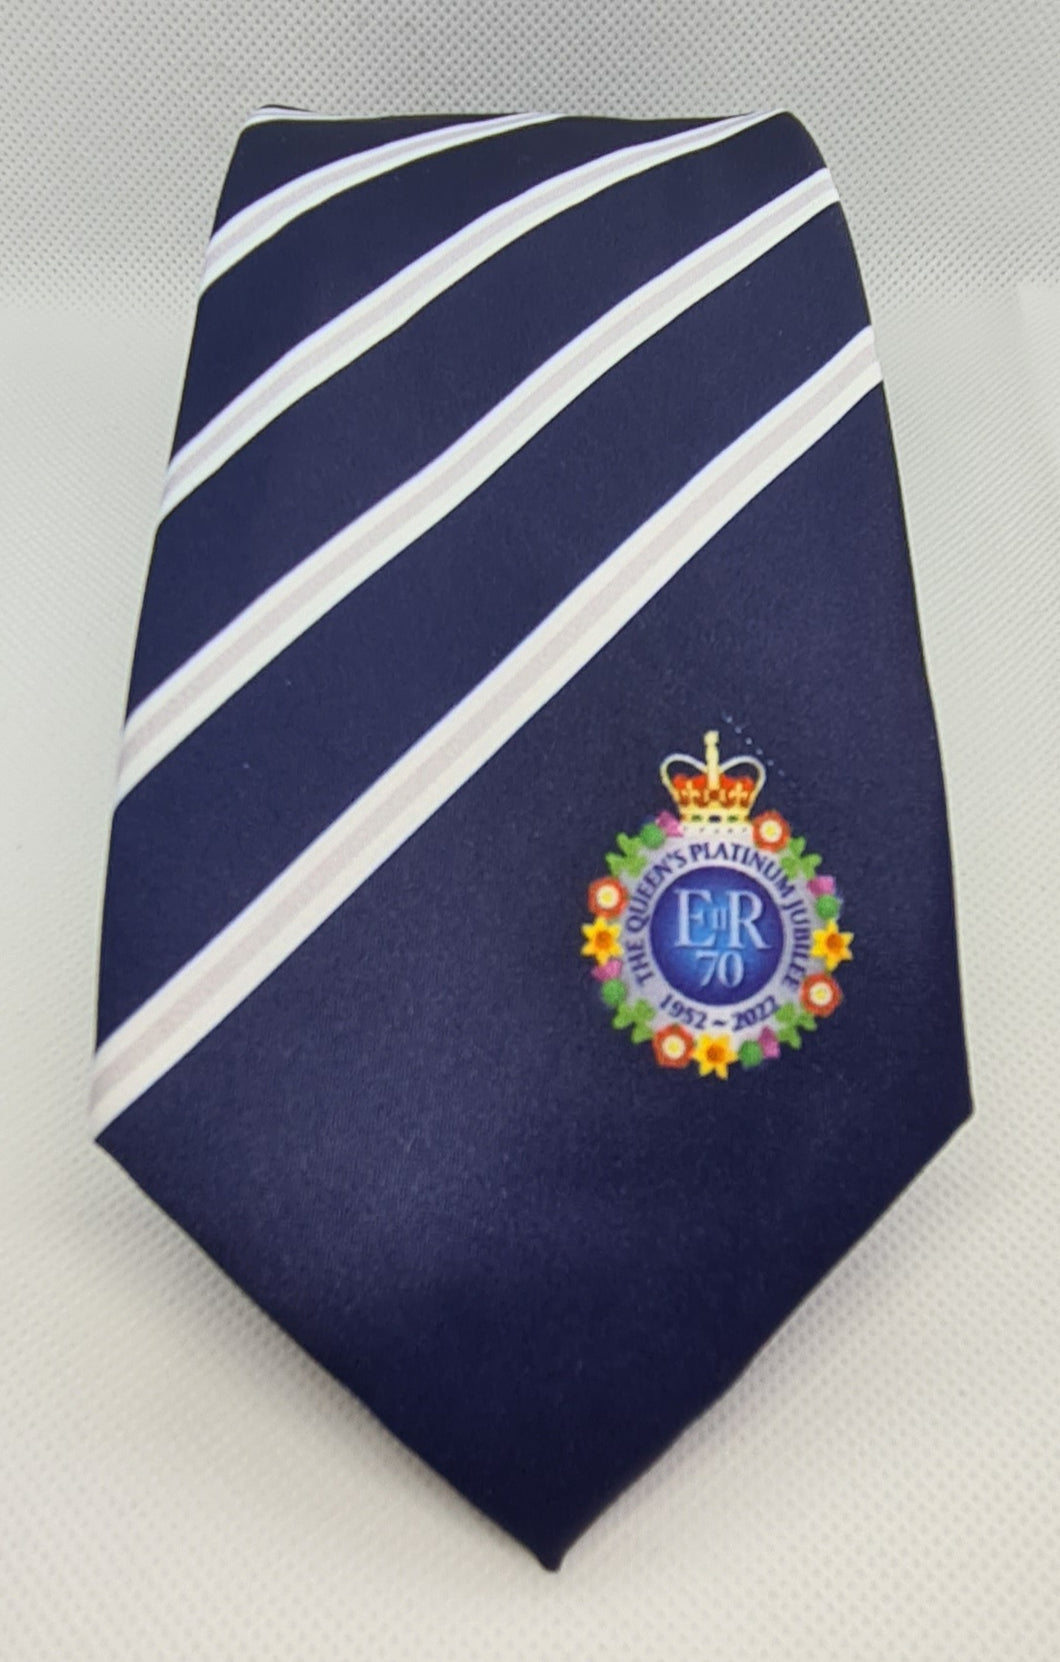 The Queen's Platinum Jubilee Commemorative Tie